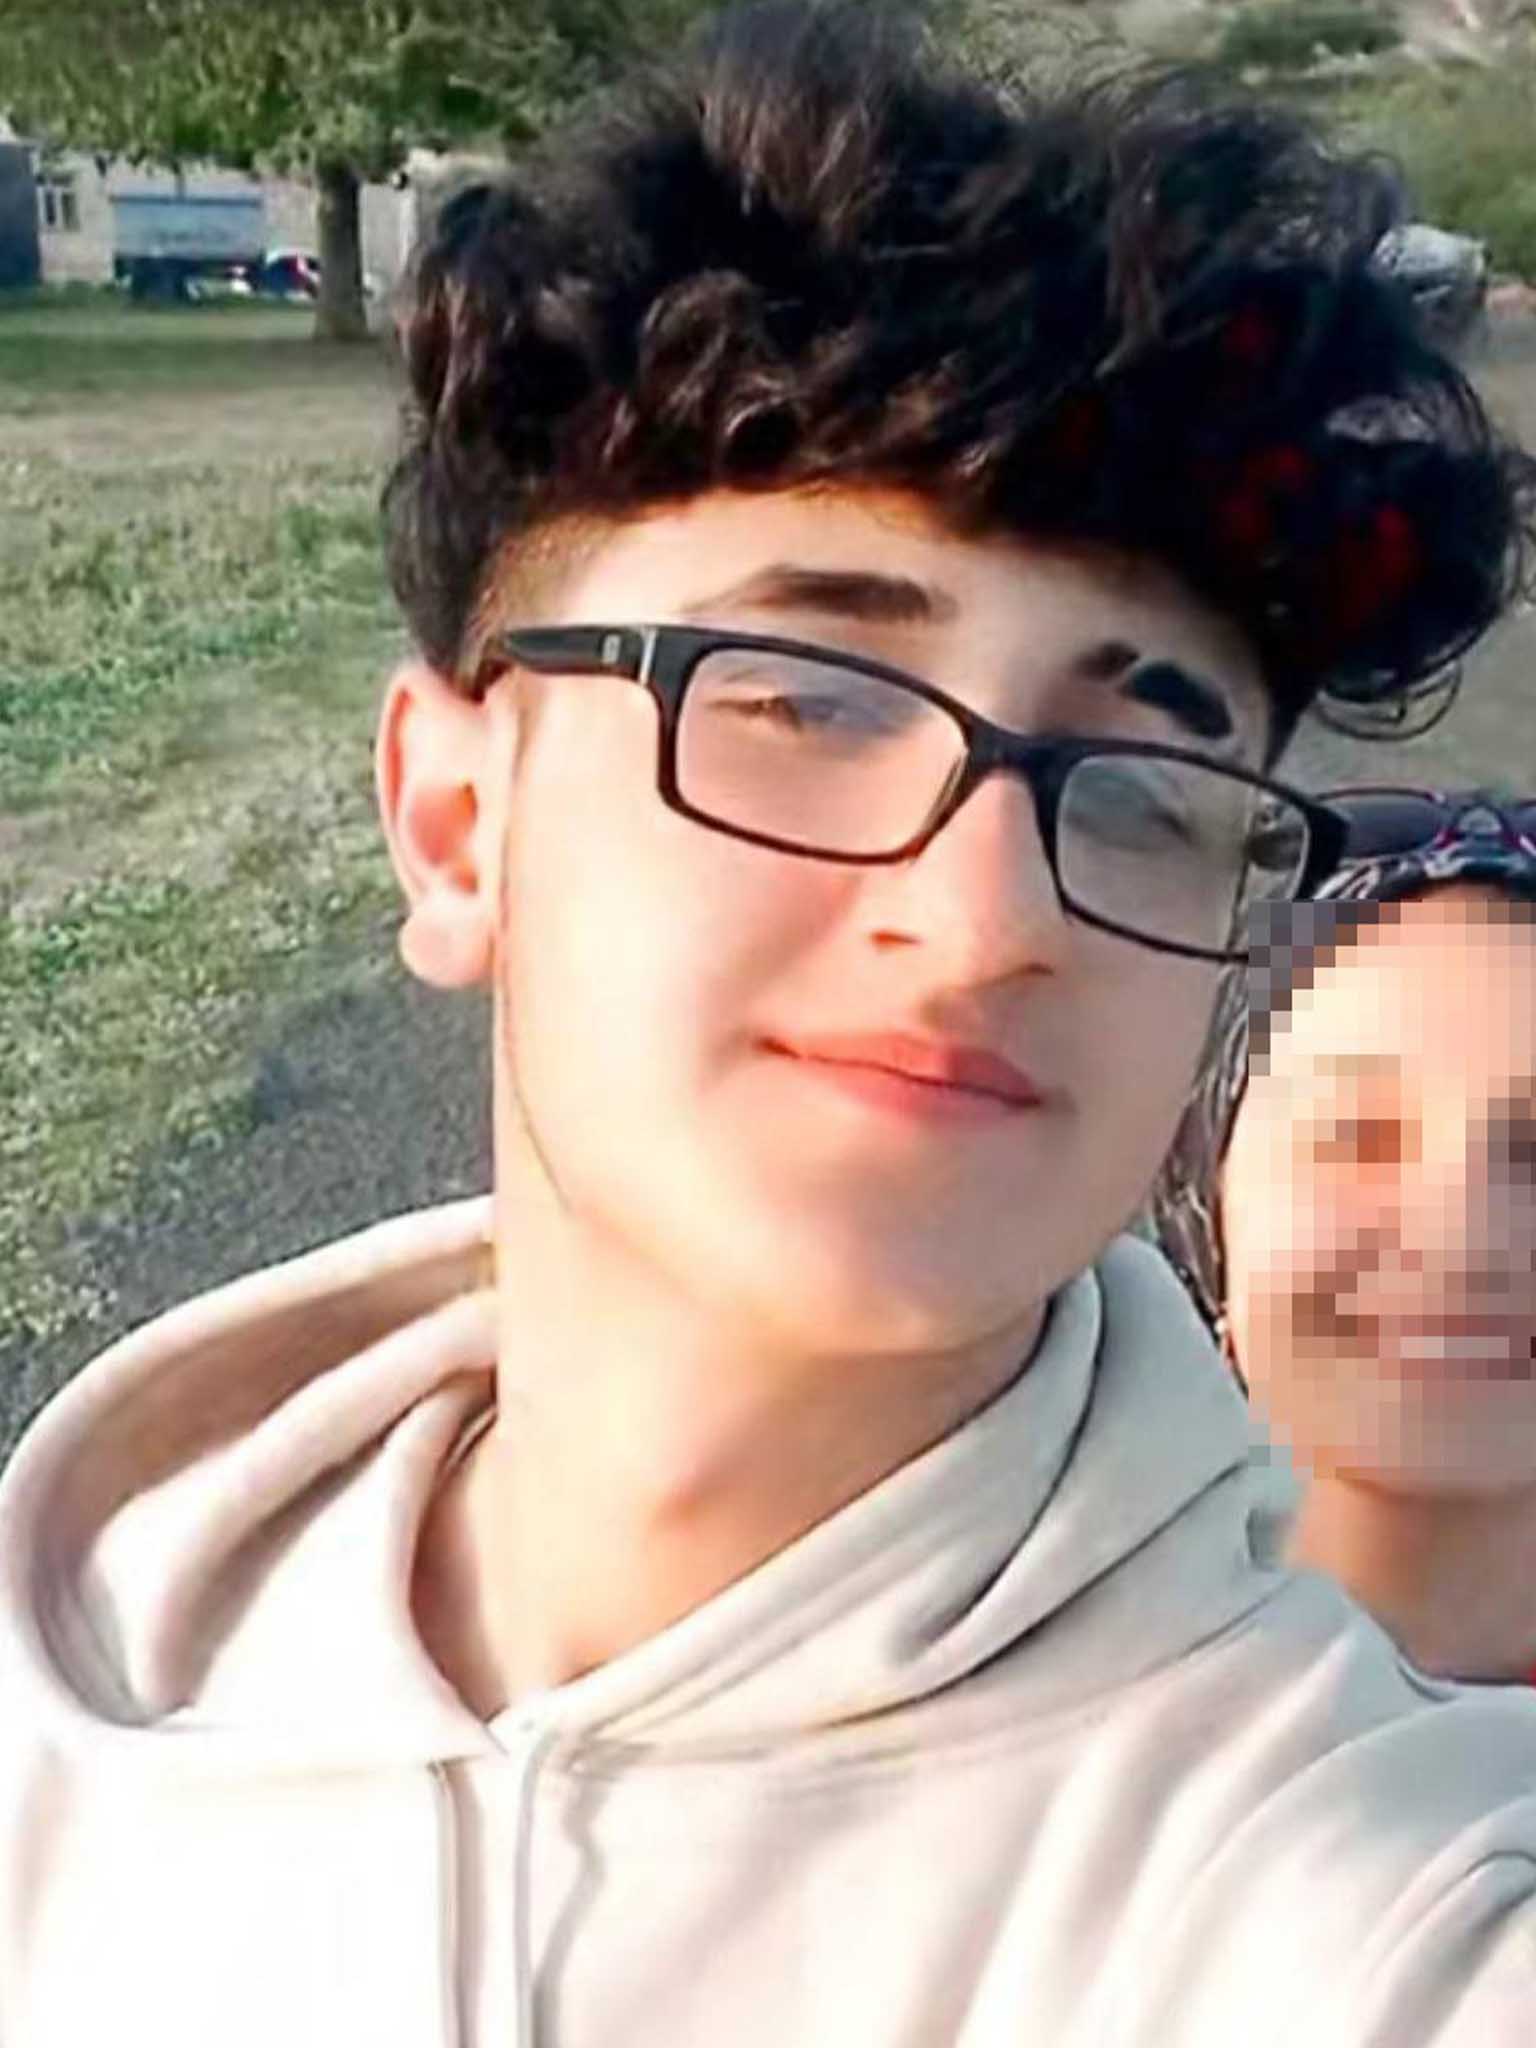 Silahlı Saldırıya Uğrayan 16 Yaşındaki Çocuk Hayatını Kaybetti 1